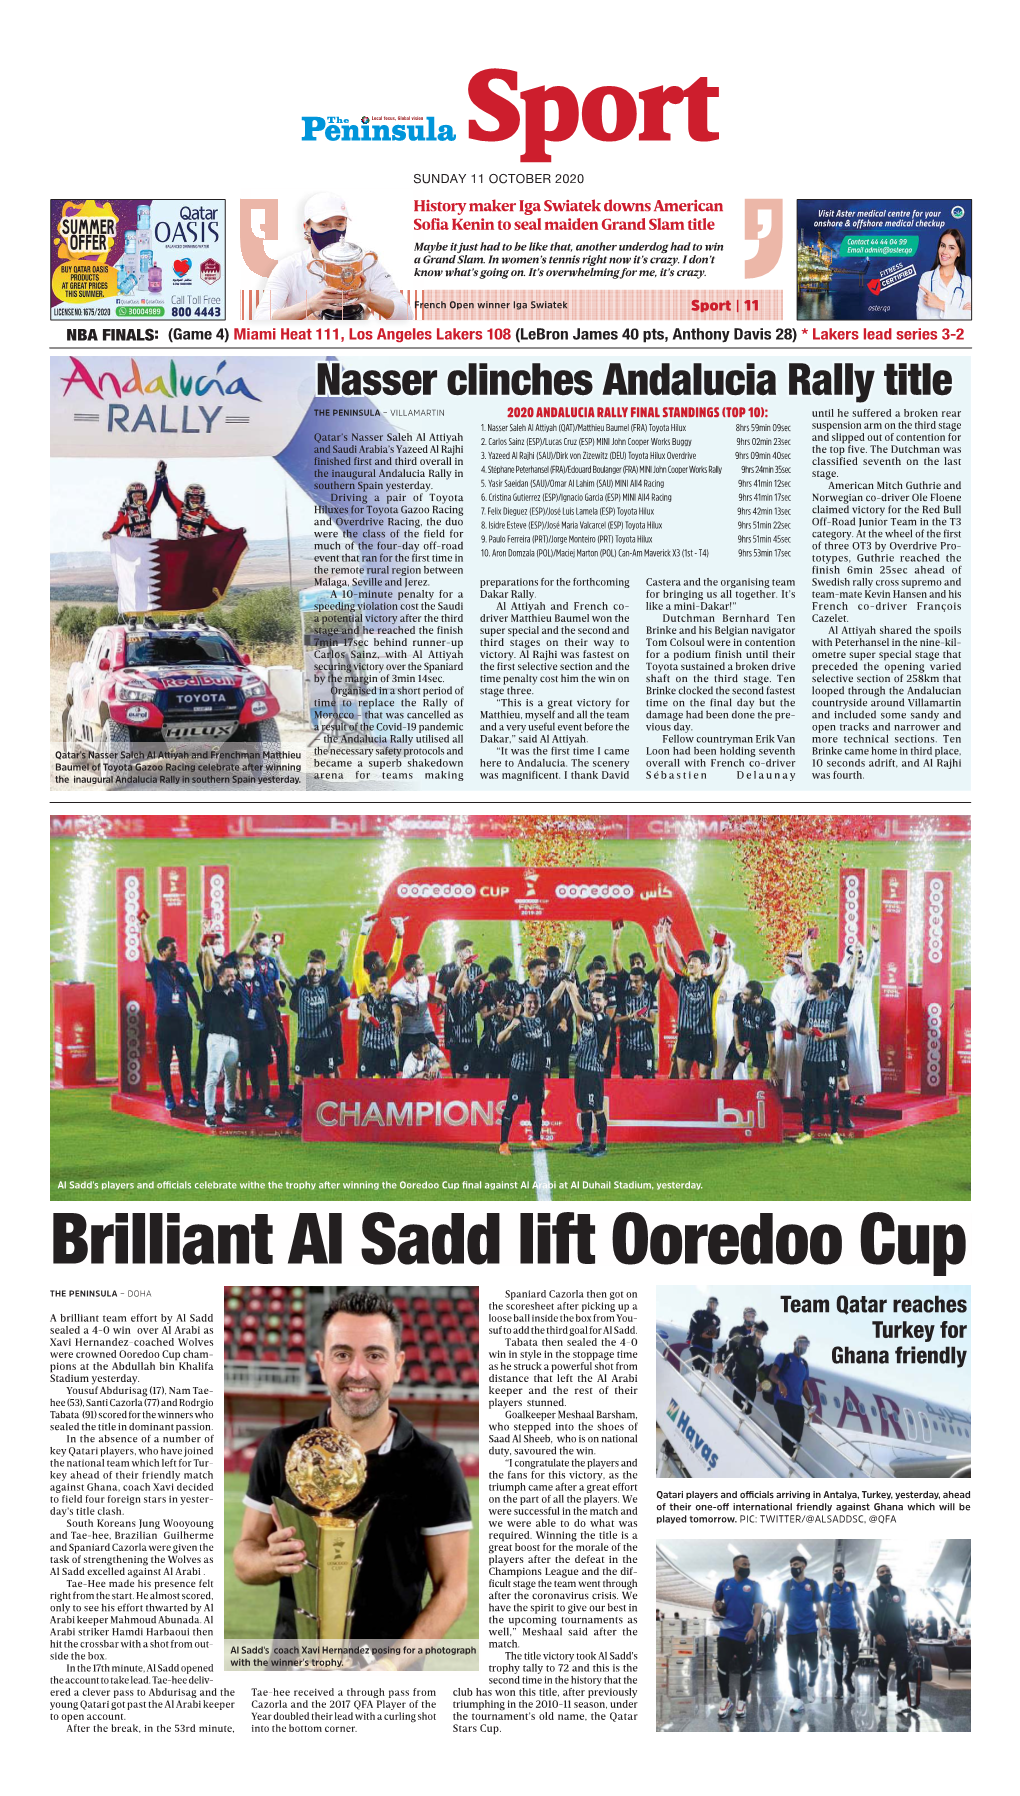 Brilliant Al Sadd Lift Ooredoo Cup